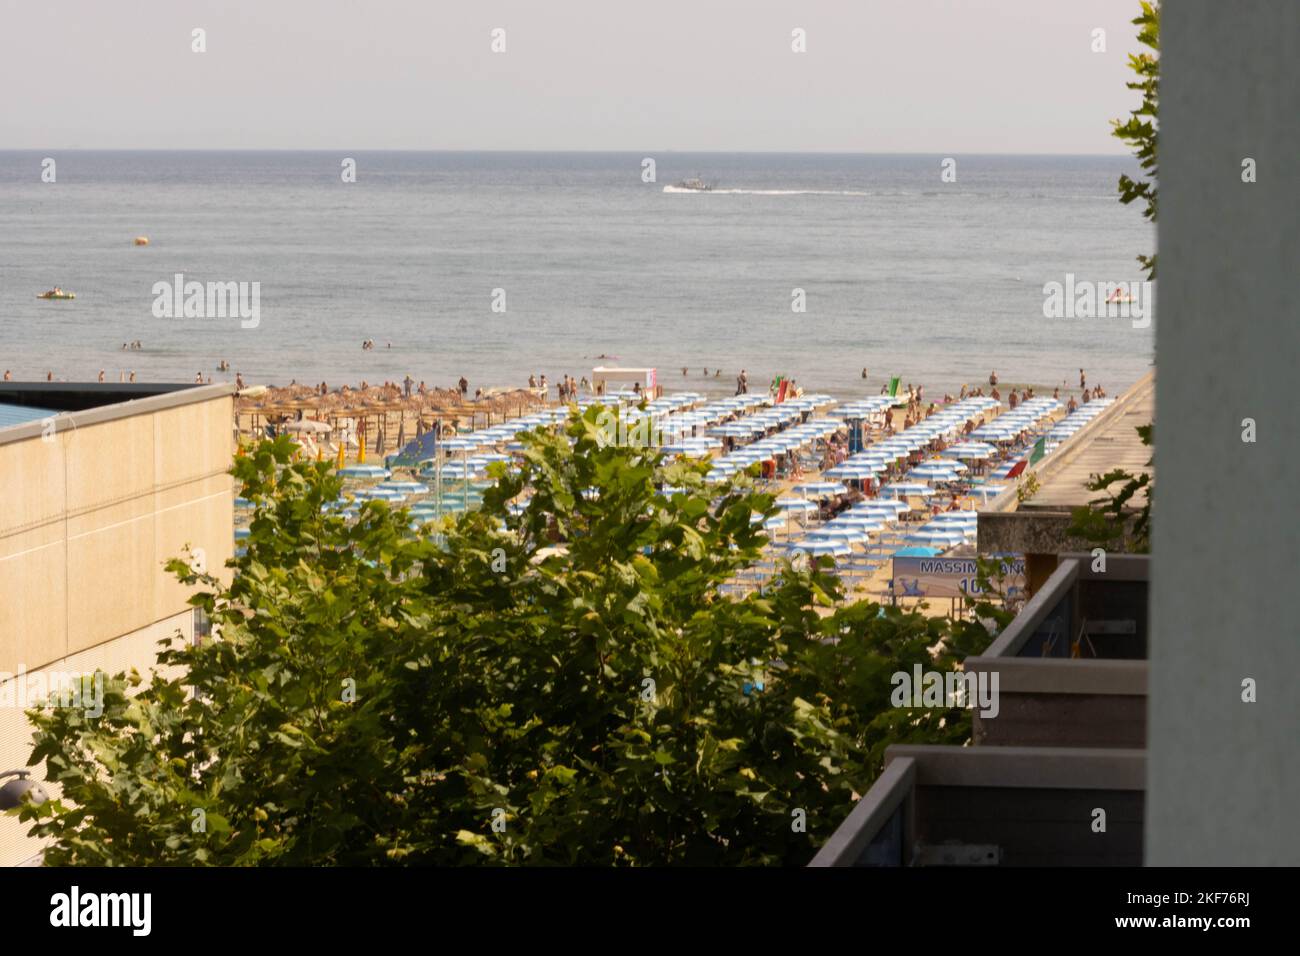 Spiaggia con bagnanti in estate. Rimini, Italia, Foto di alta qualità Foto Stock